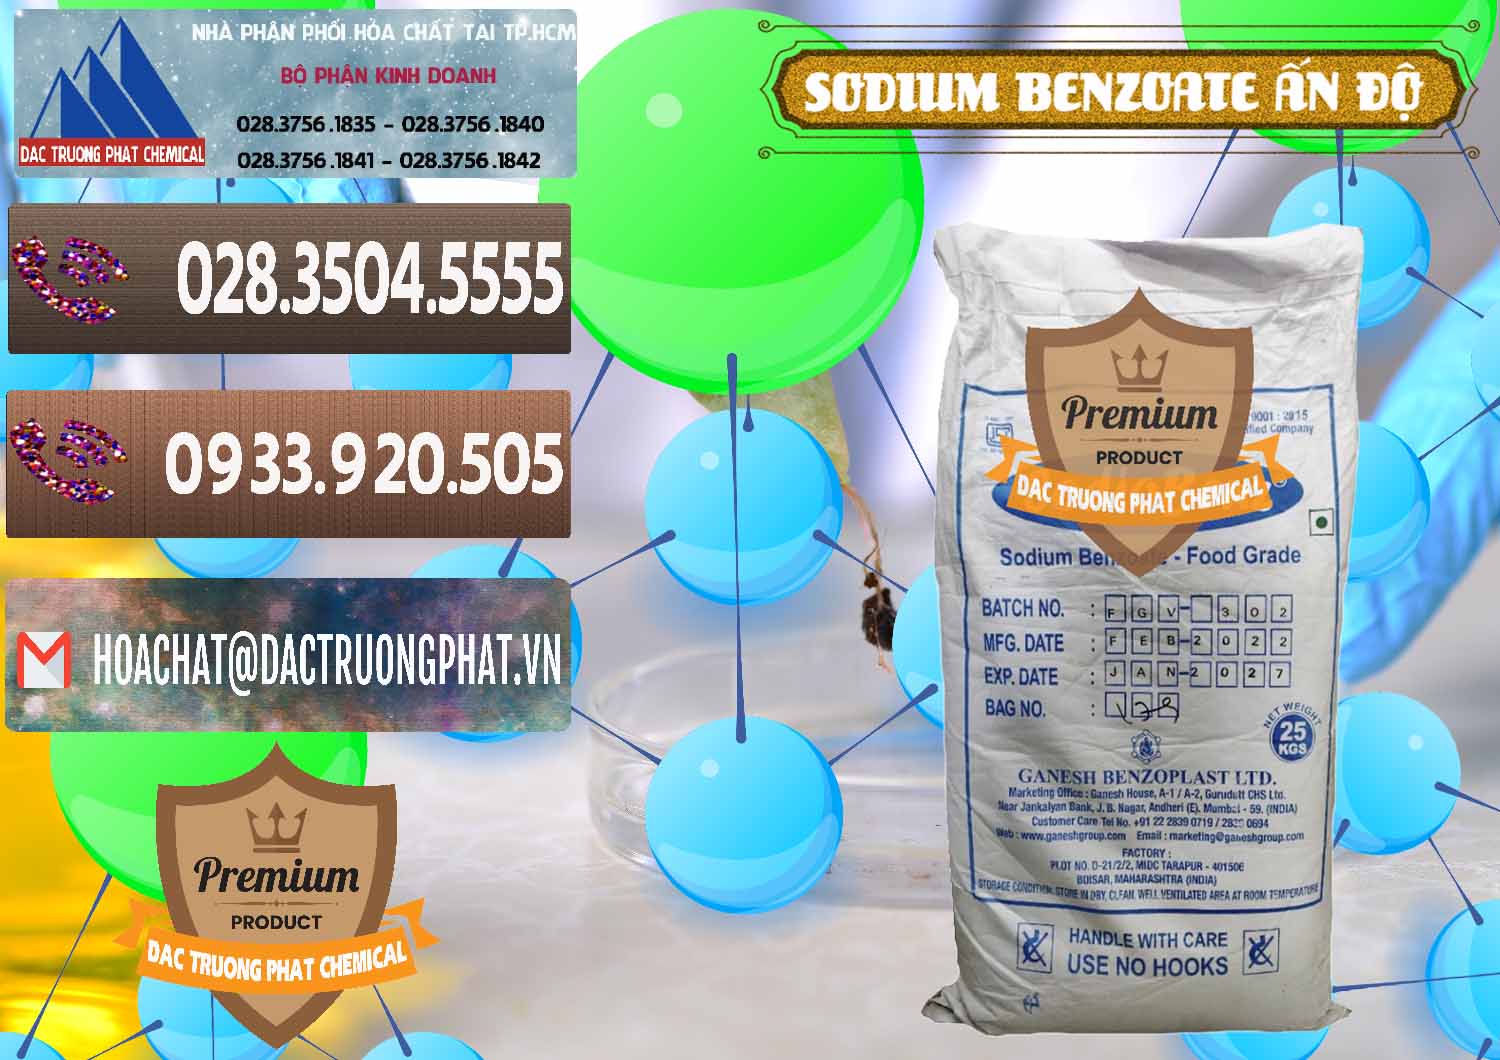 Cty bán - phân phối Sodium Benzoate - Mốc Bột Ấn Độ India - 0361 - Cty cung cấp _ kinh doanh hóa chất tại TP.HCM - hoachatviet.net